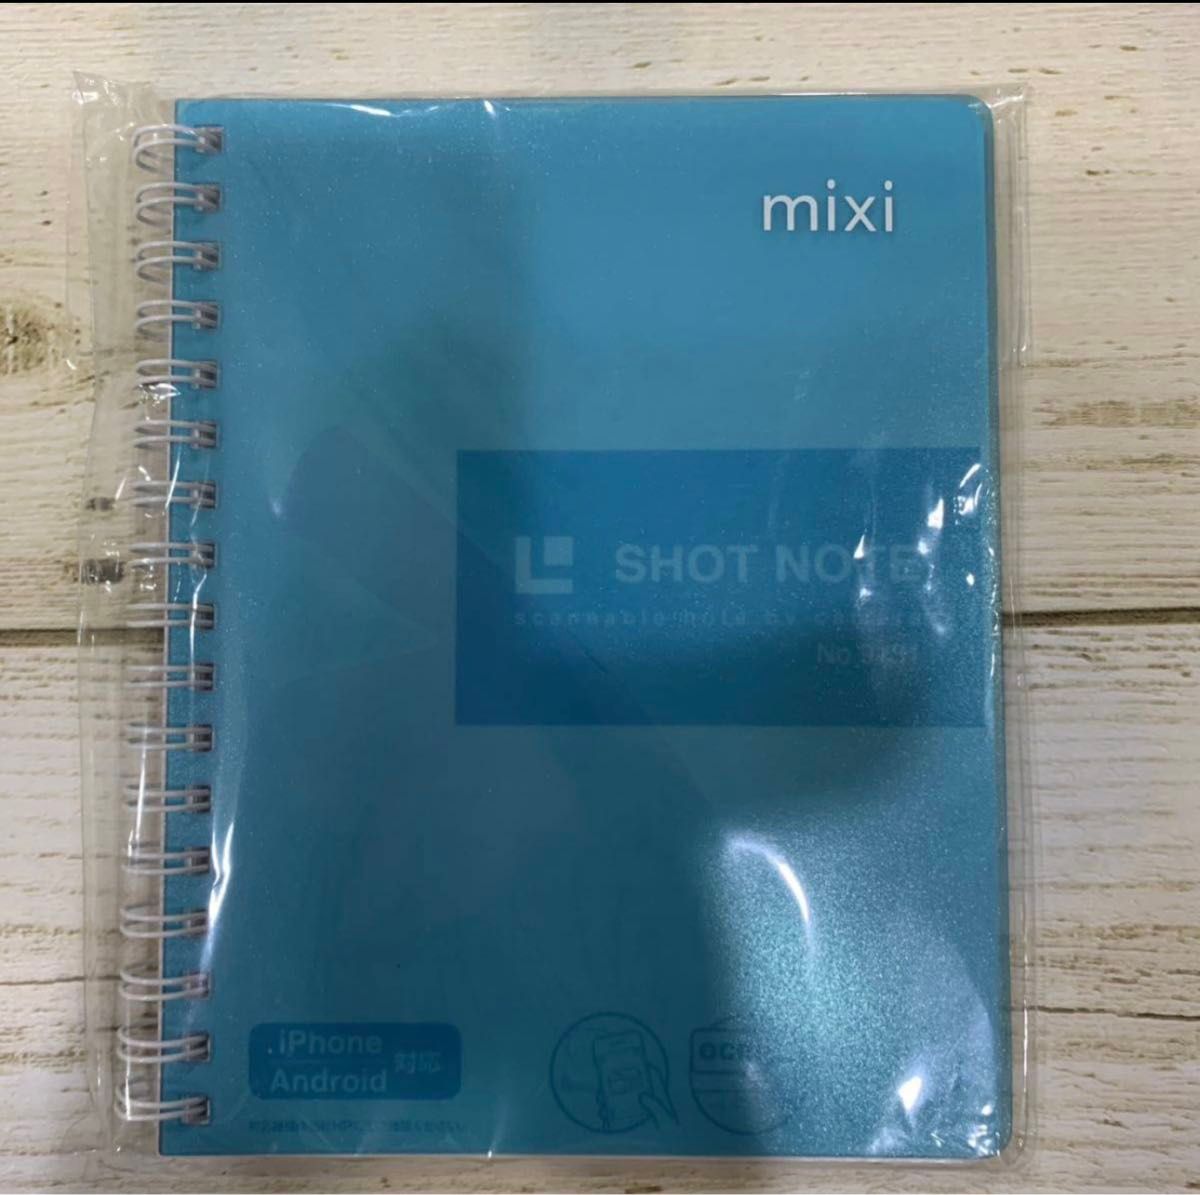 キングジム ショットノート shot note 2冊 水色 黄緑 メモ帳 リングノート 手帳 mixi Mサイズ 